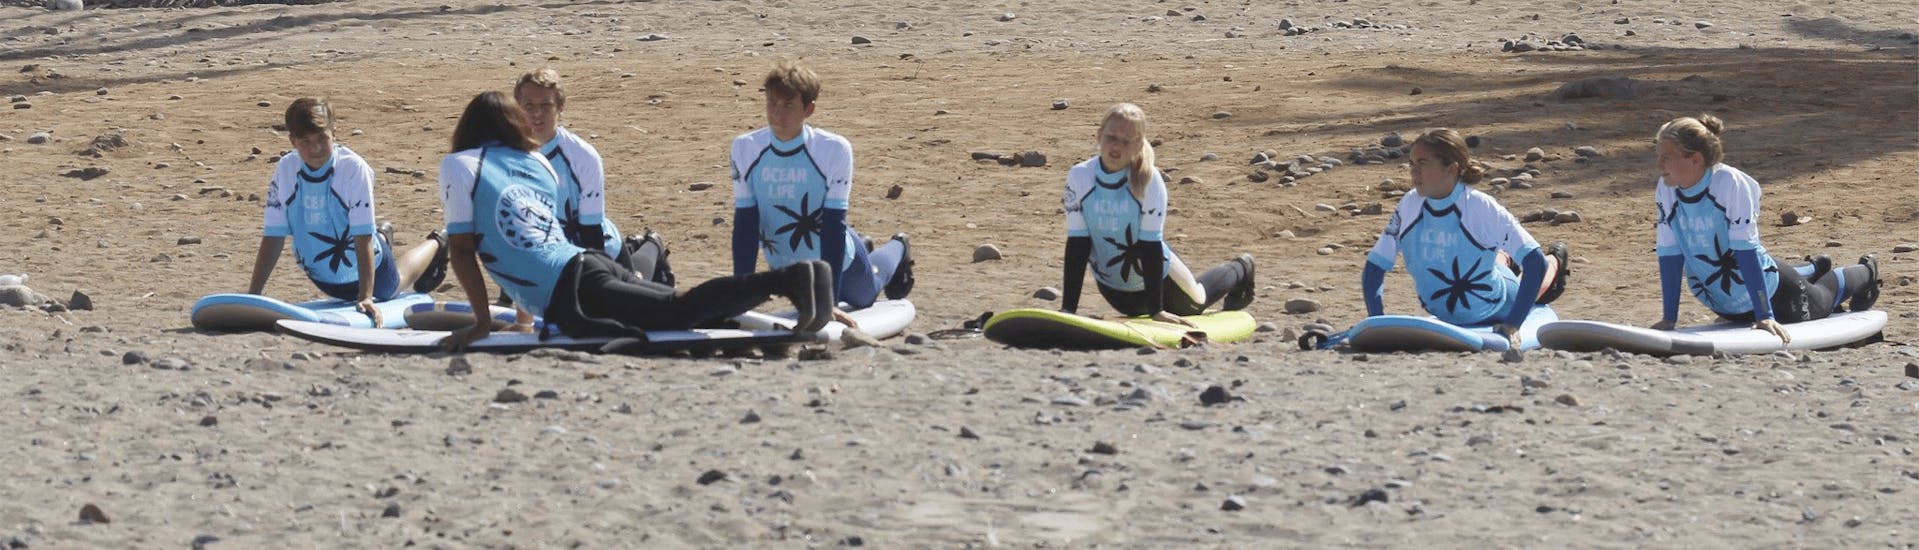 Lezioni di surf per surfisti con esperienza sulla spiaggia di Las Américas.